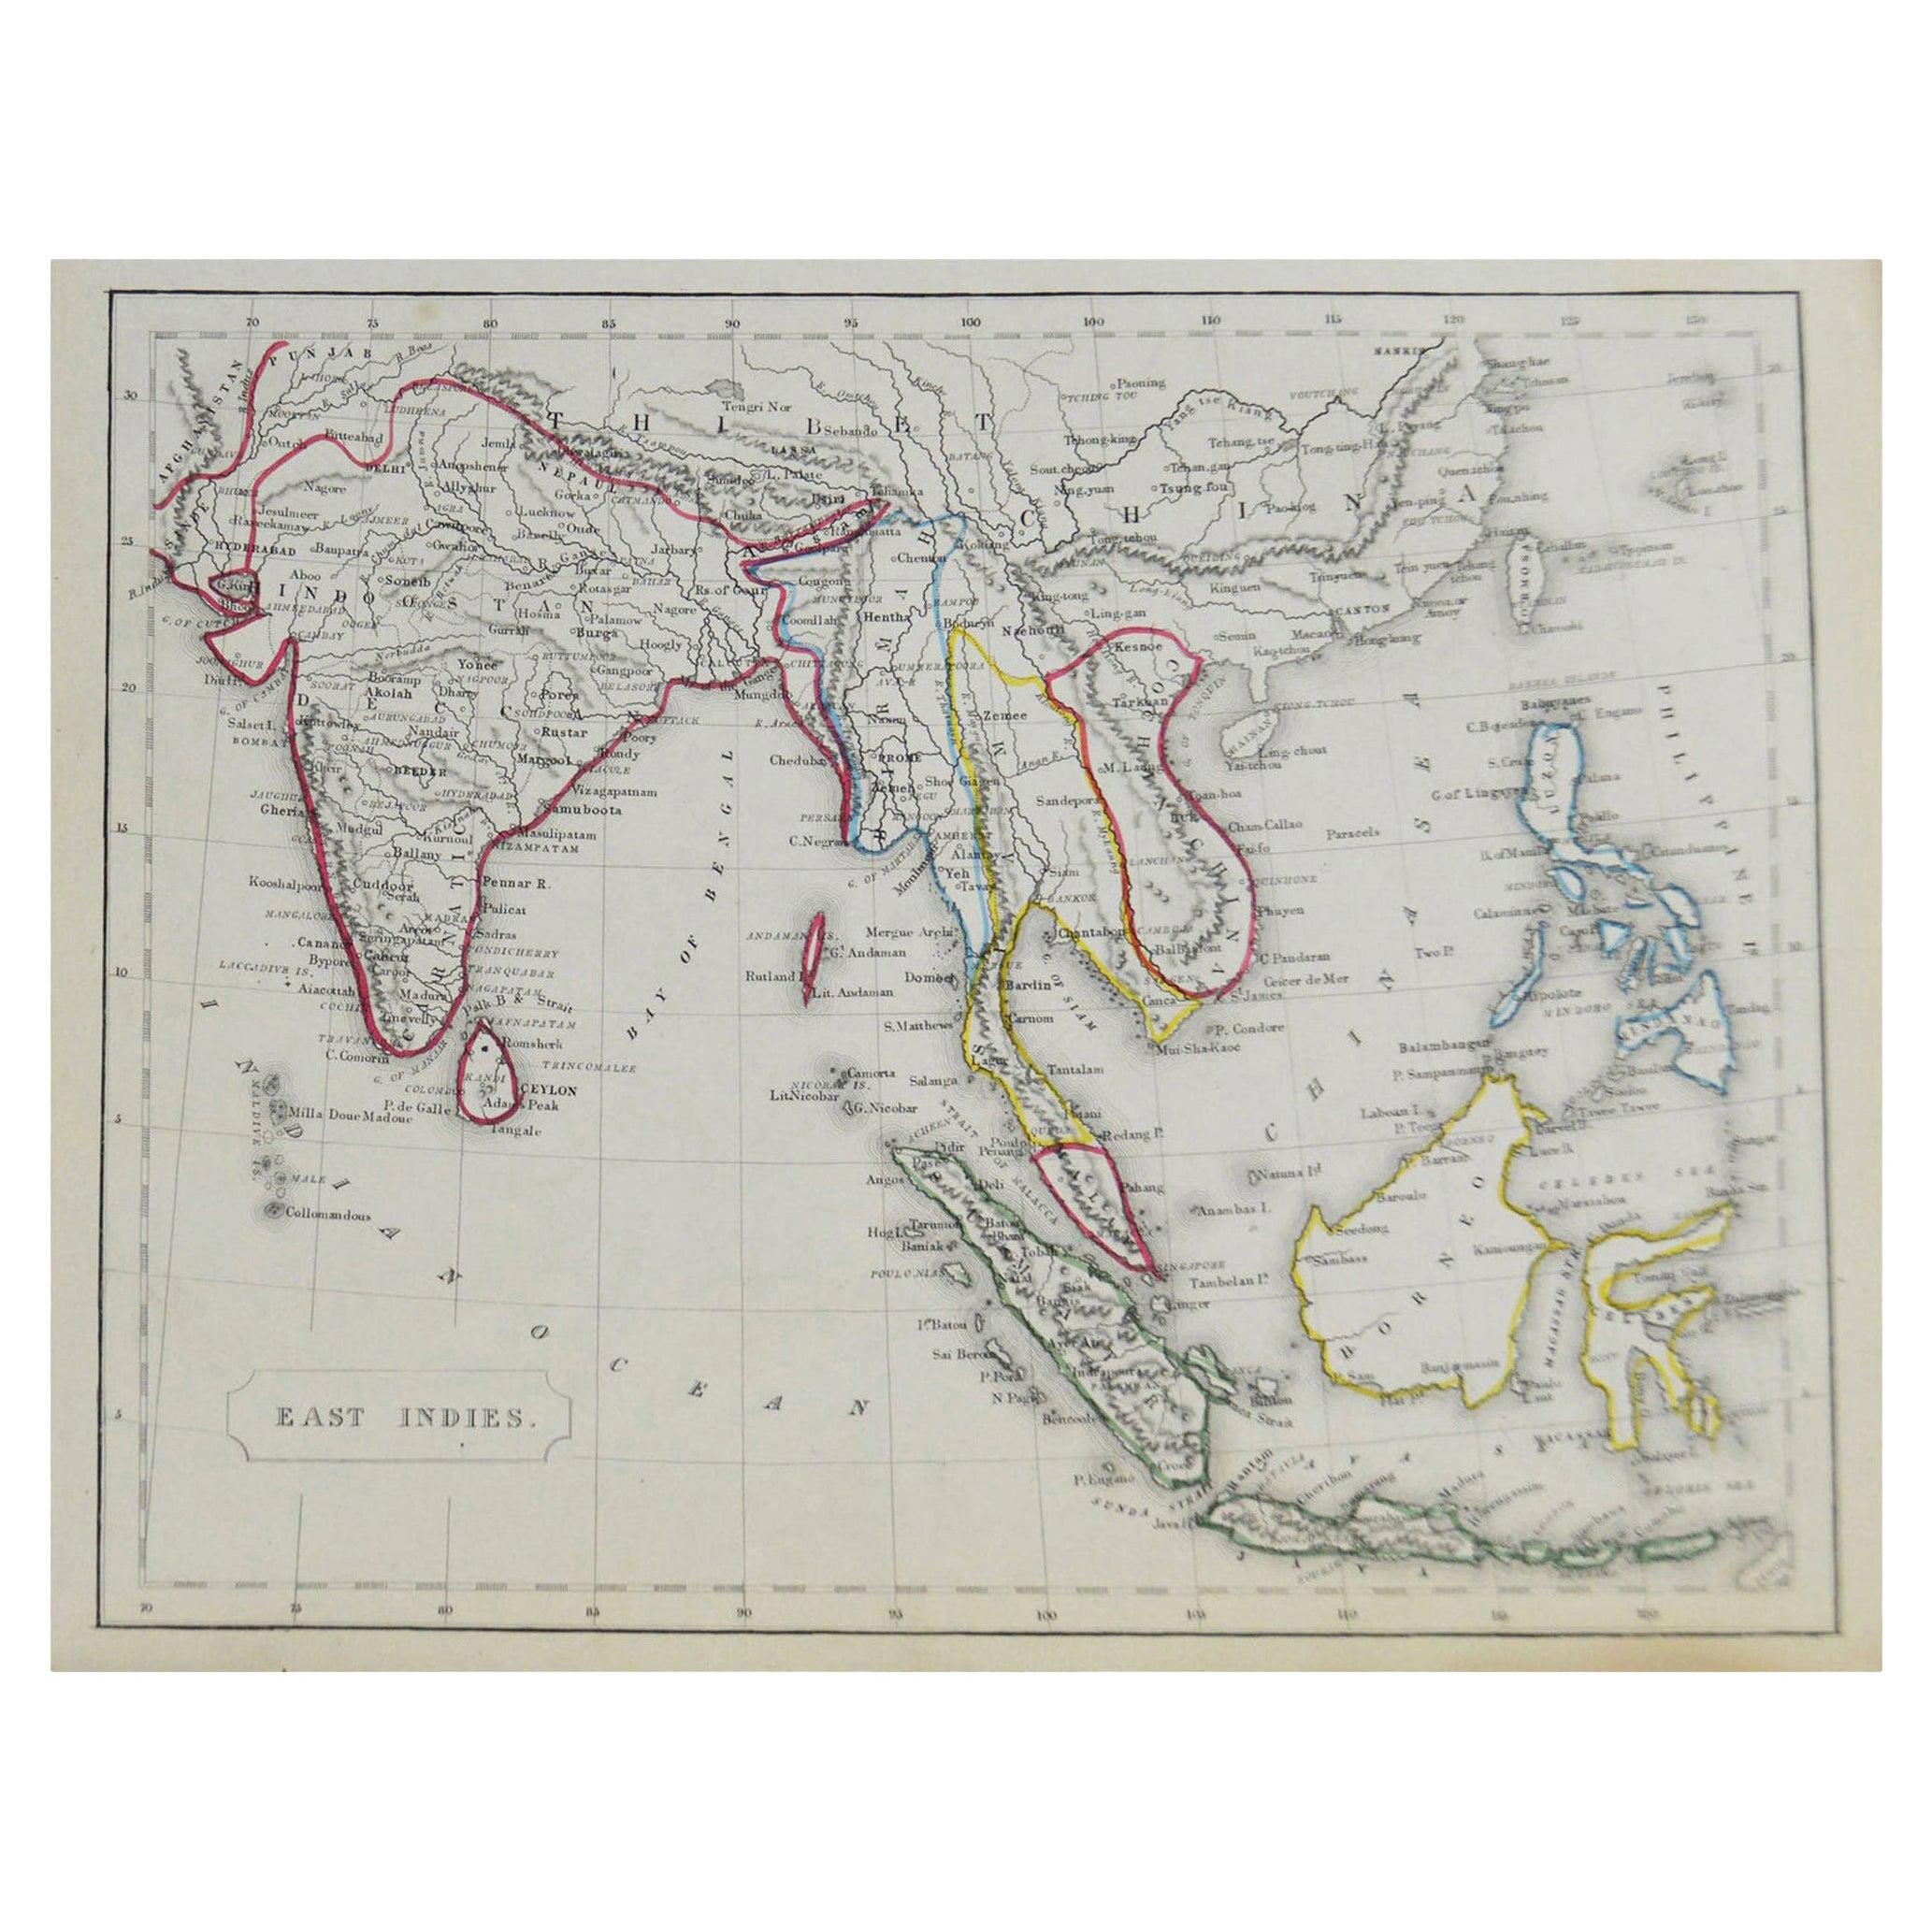 Carte originale ancienne d'Asie du Sud-Est par Becker, datant d'environ 1840